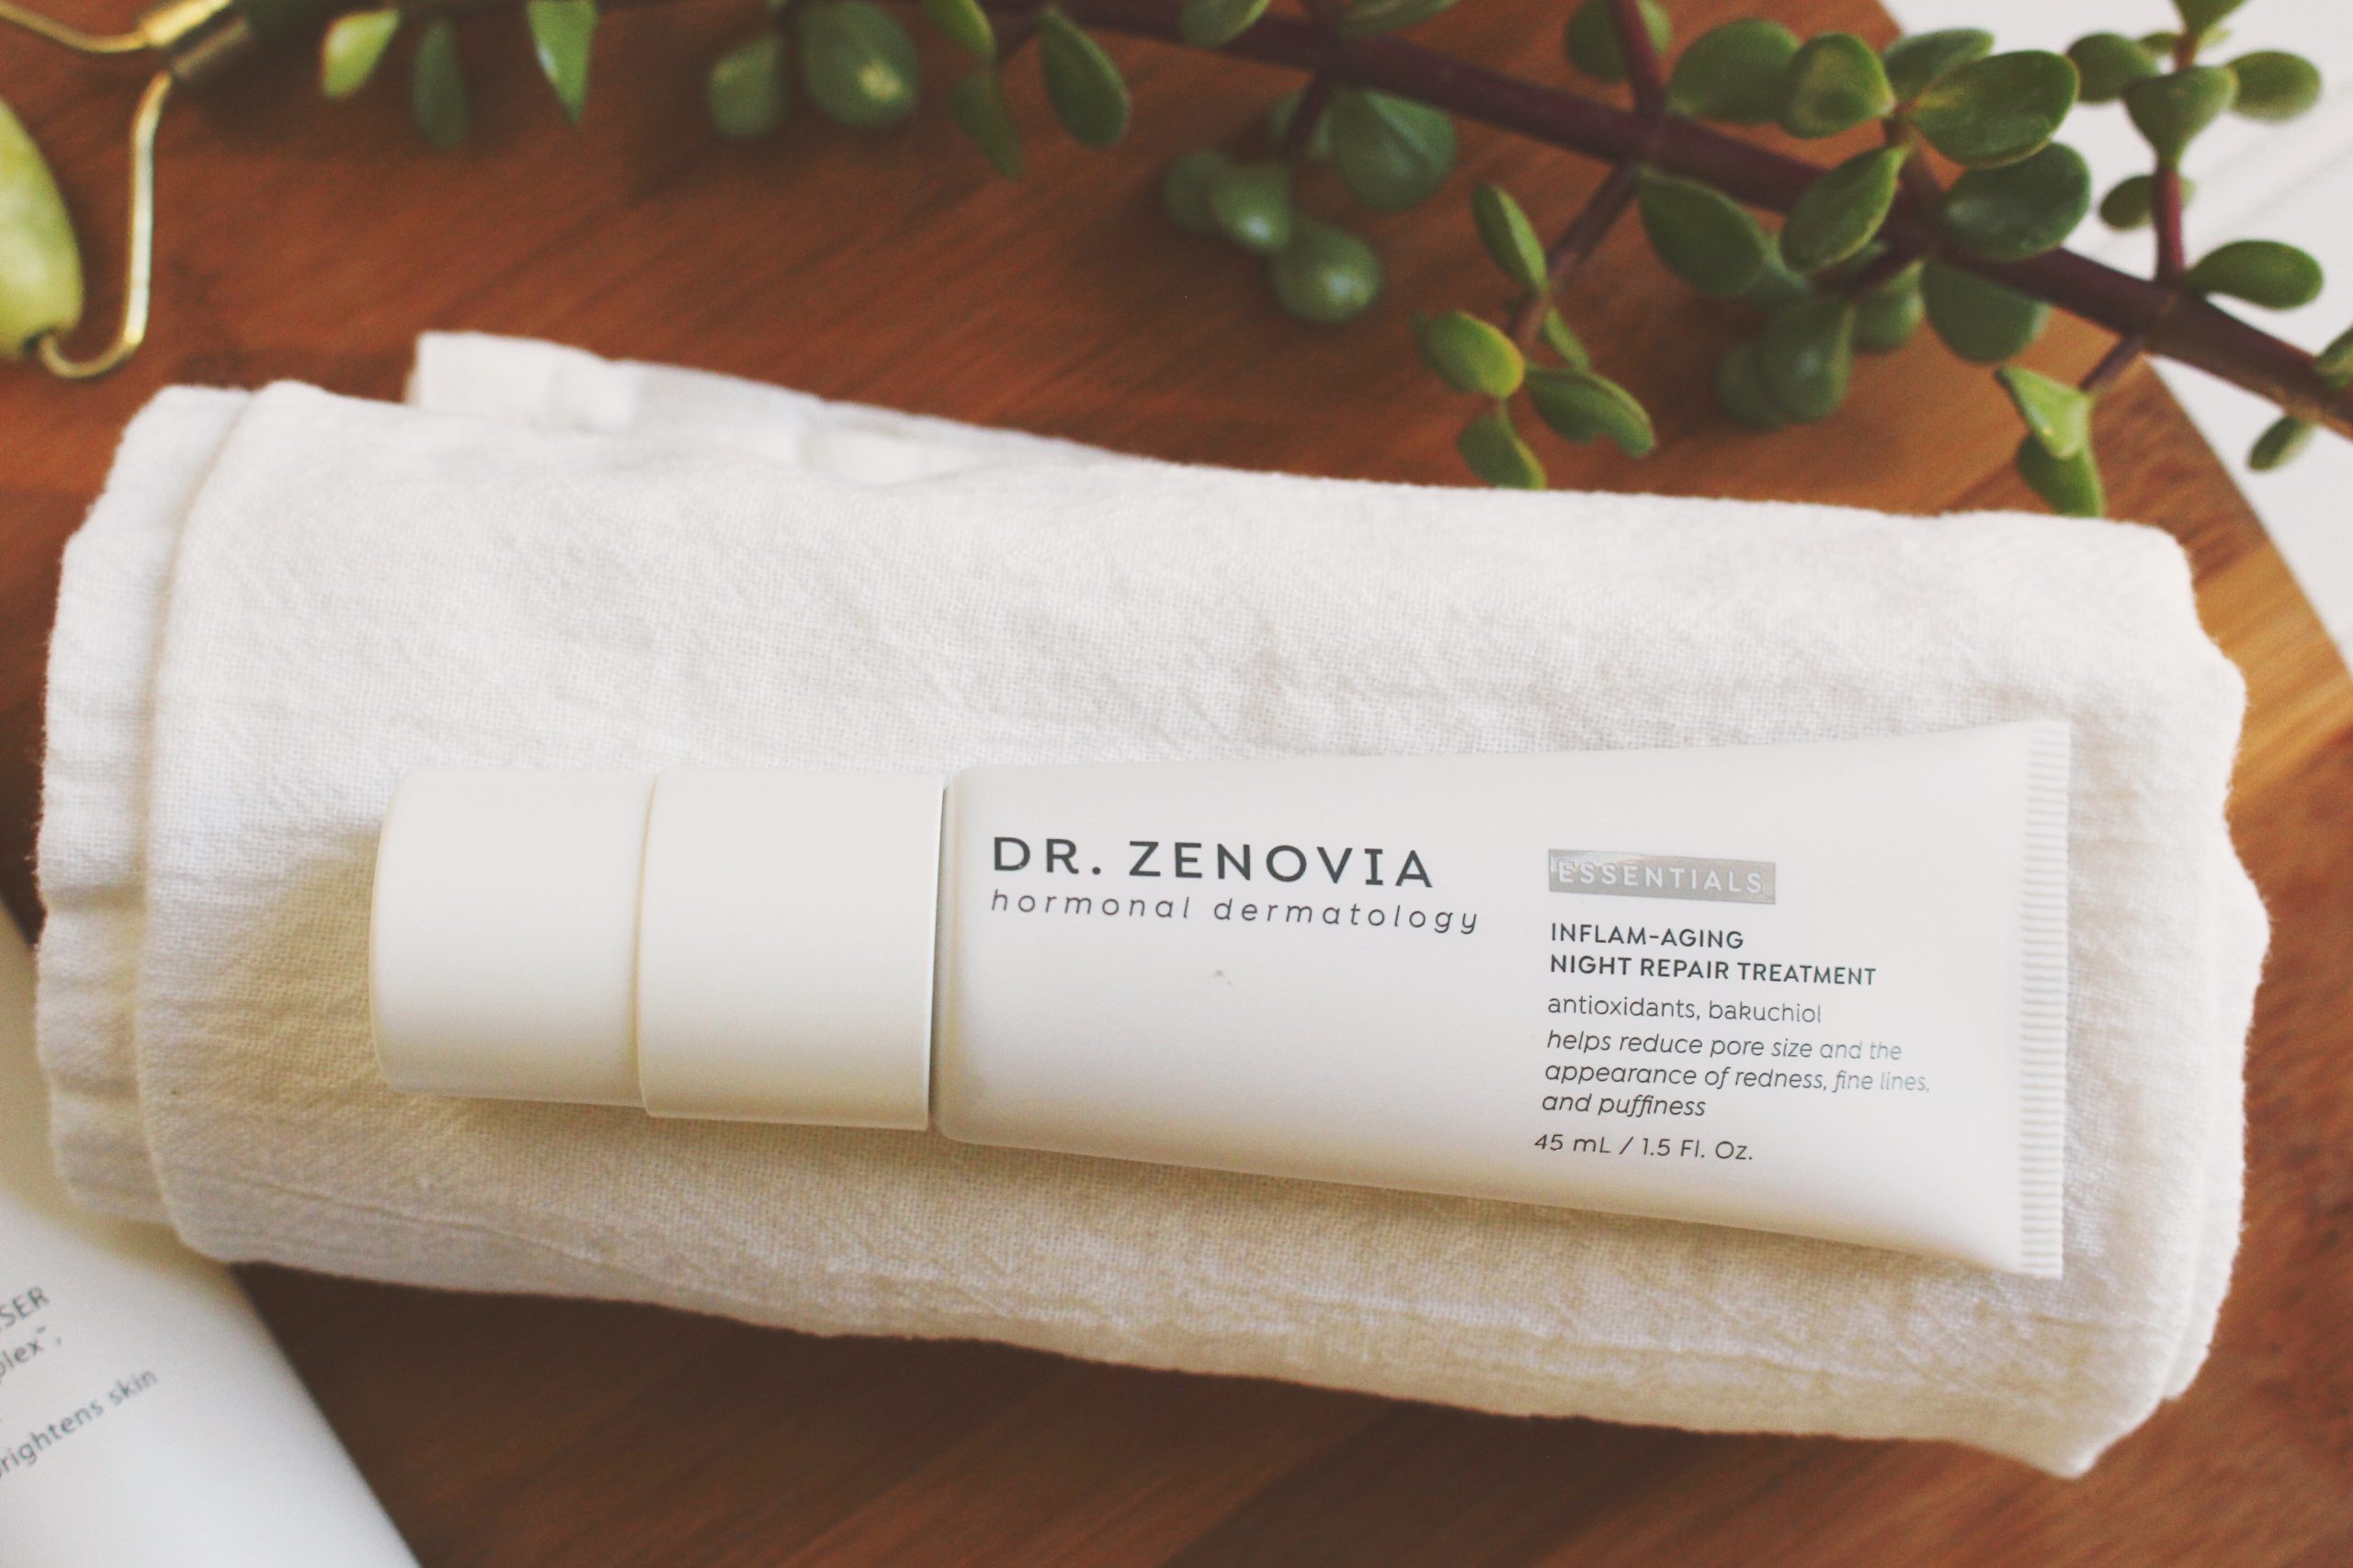 Dr. Zenovia Inflam-Aging Night Repair Treatment